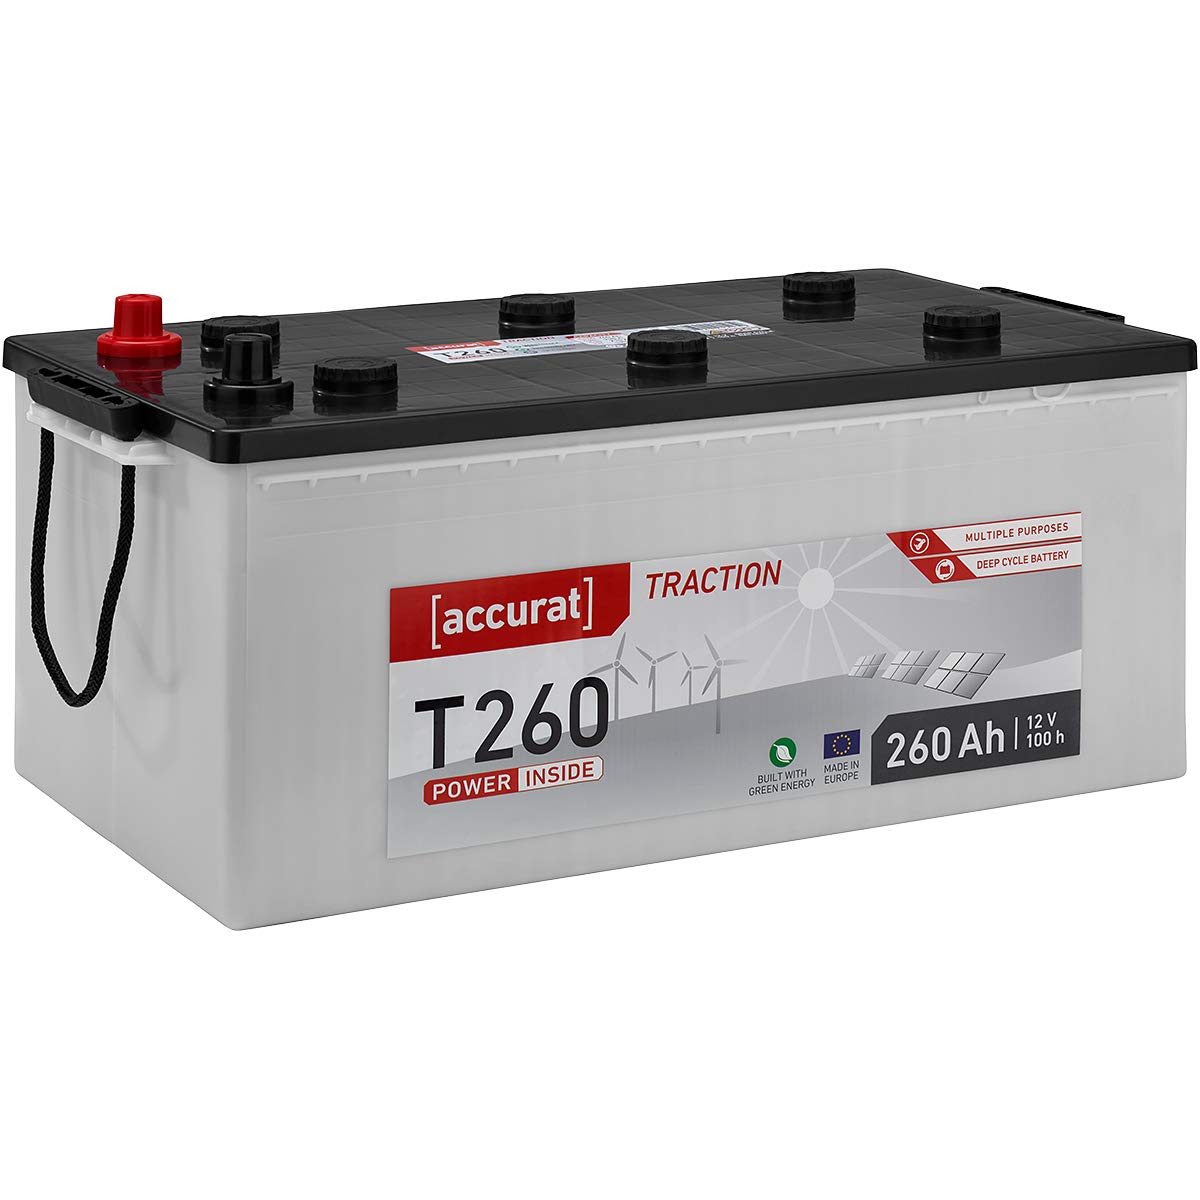 Accurat Traction T260 AGM Batterie - 12V, 260Ah, zyklenfest, bis 30% mehr Kapazität - VRLA Versorgungsbatterie, Bootsbatterie, Solarbatterie für Wohnwagen, Wohnmobil, Camper von Accurat